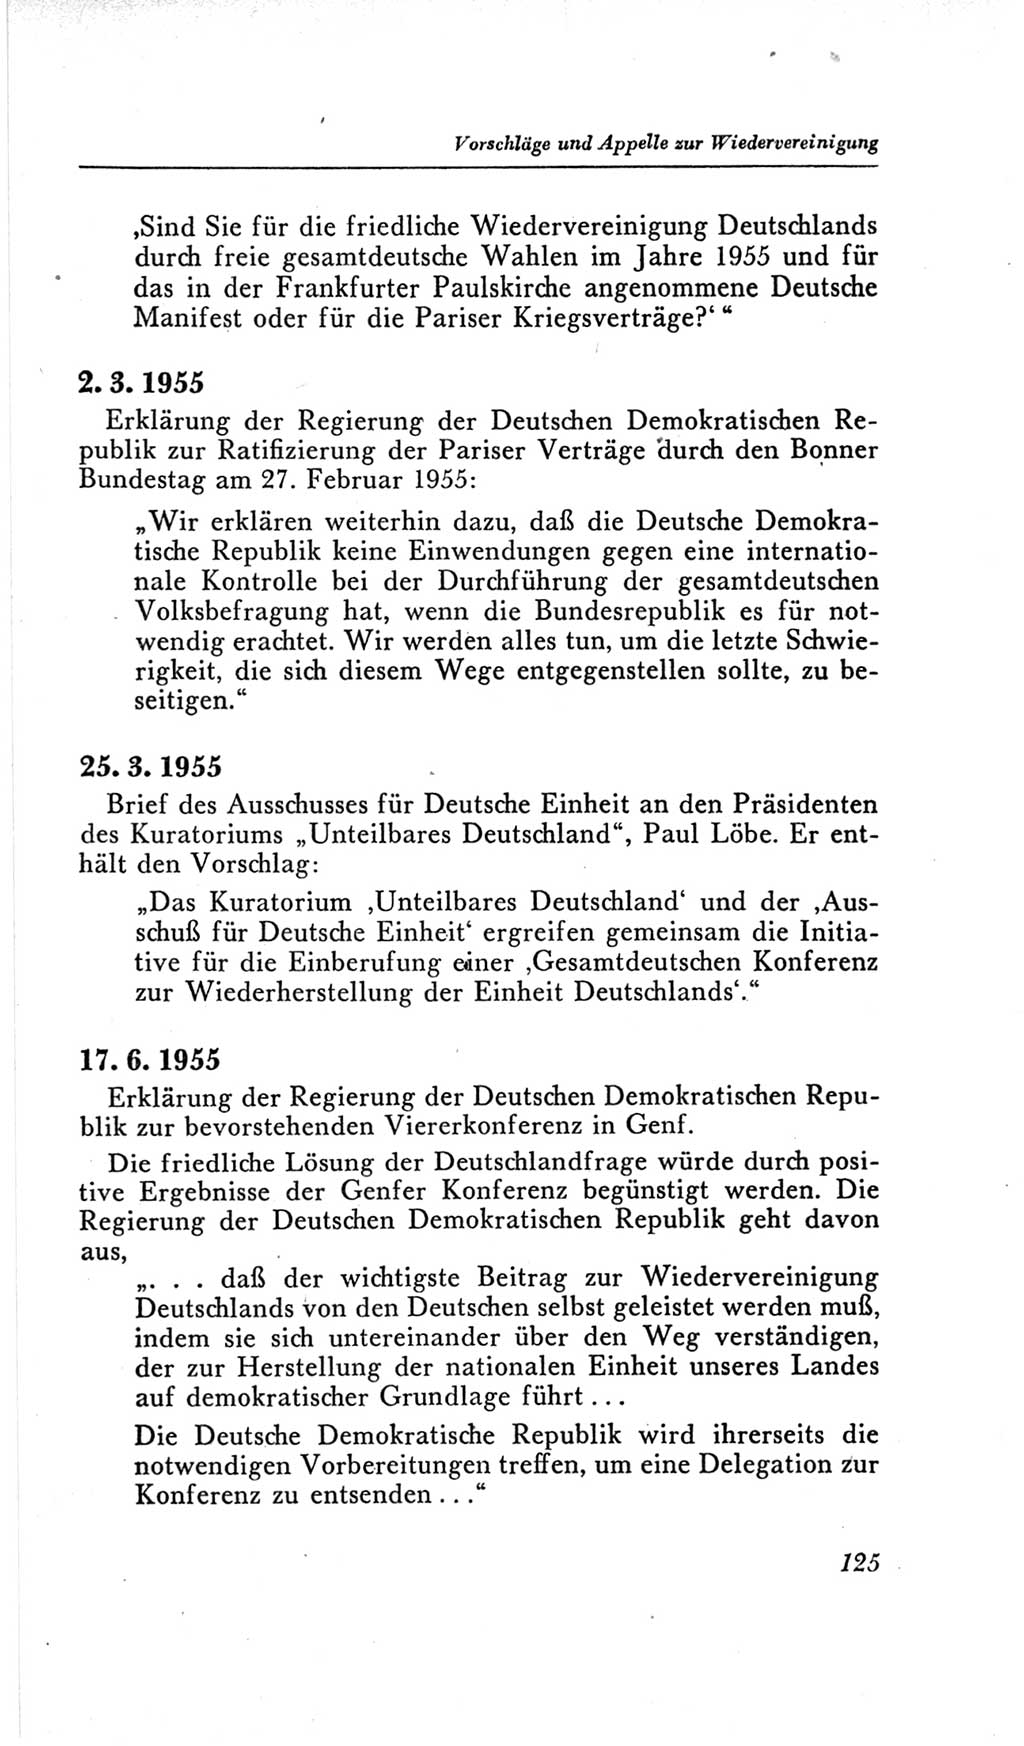 Handbuch der Volkskammer (VK) der Deutschen Demokratischen Republik (DDR), 2. Wahlperiode 1954-1958, Seite 125 (Hdb. VK. DDR, 2. WP. 1954-1958, S. 125)